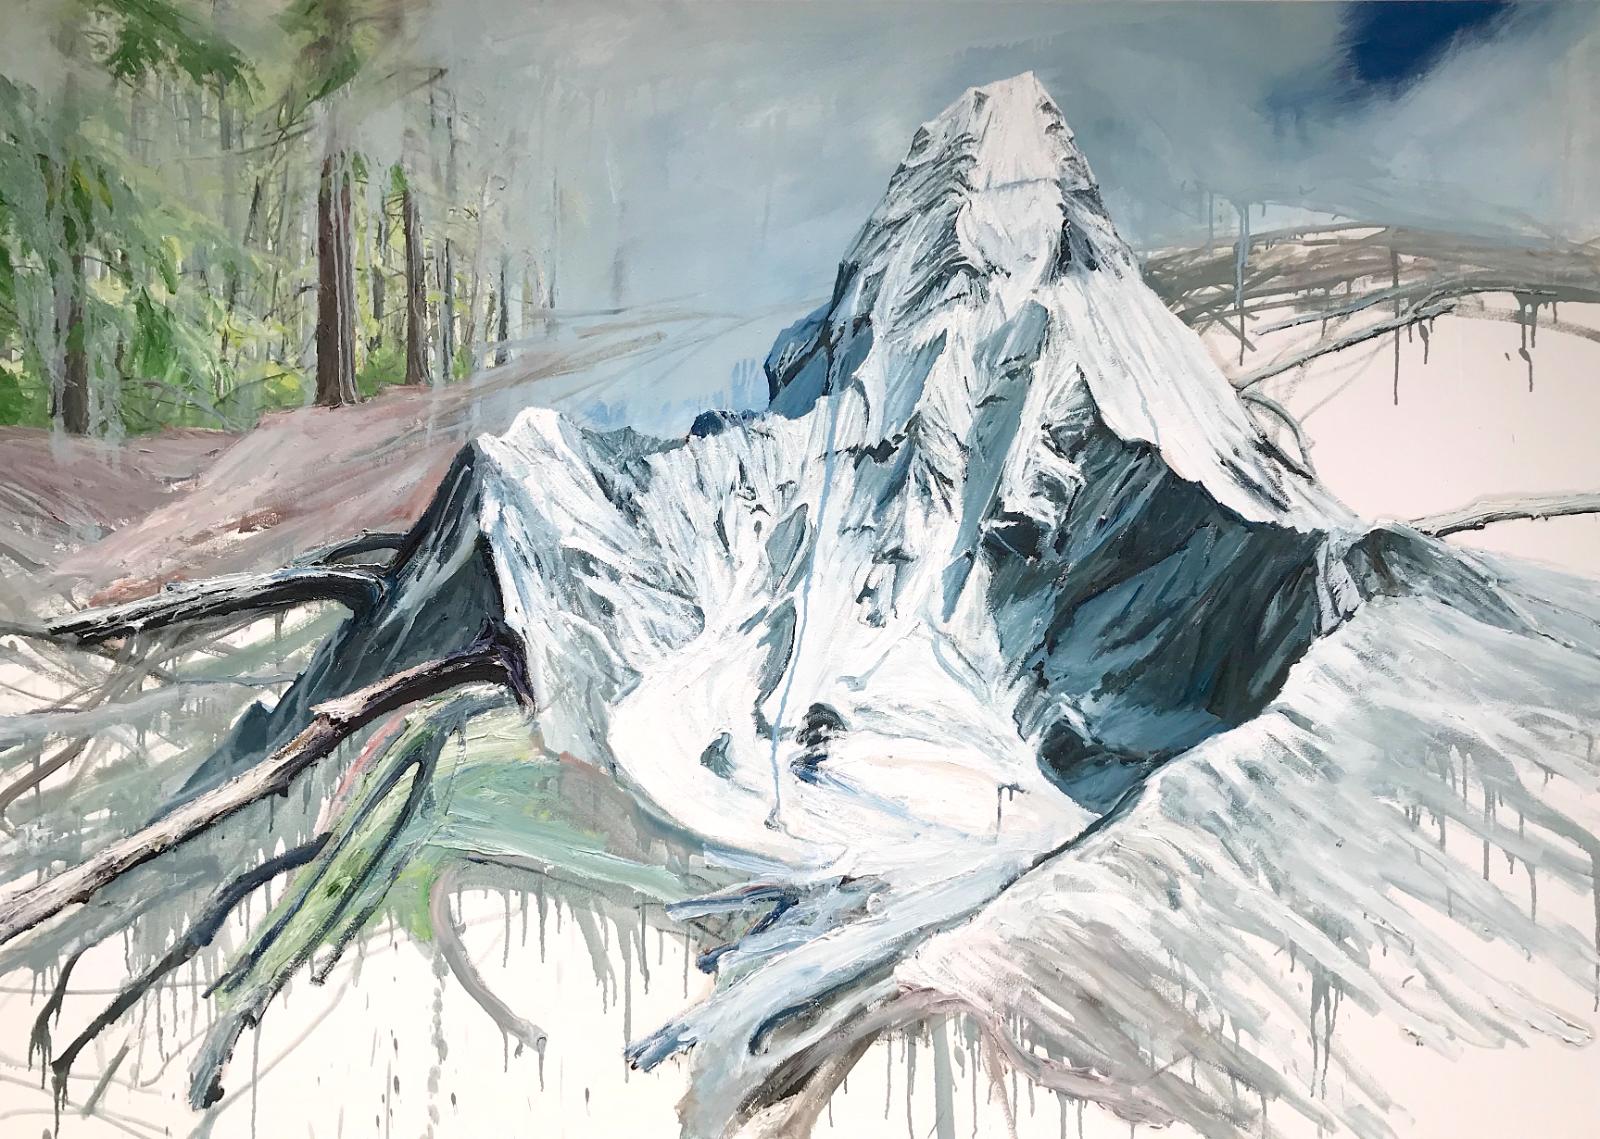 Helge Hommes, Ama Dablam, 2017, Öl auf Leinwand, 135 cm x 190 cm, Preis auf Anfrage, Galerie Cyprian Brenner